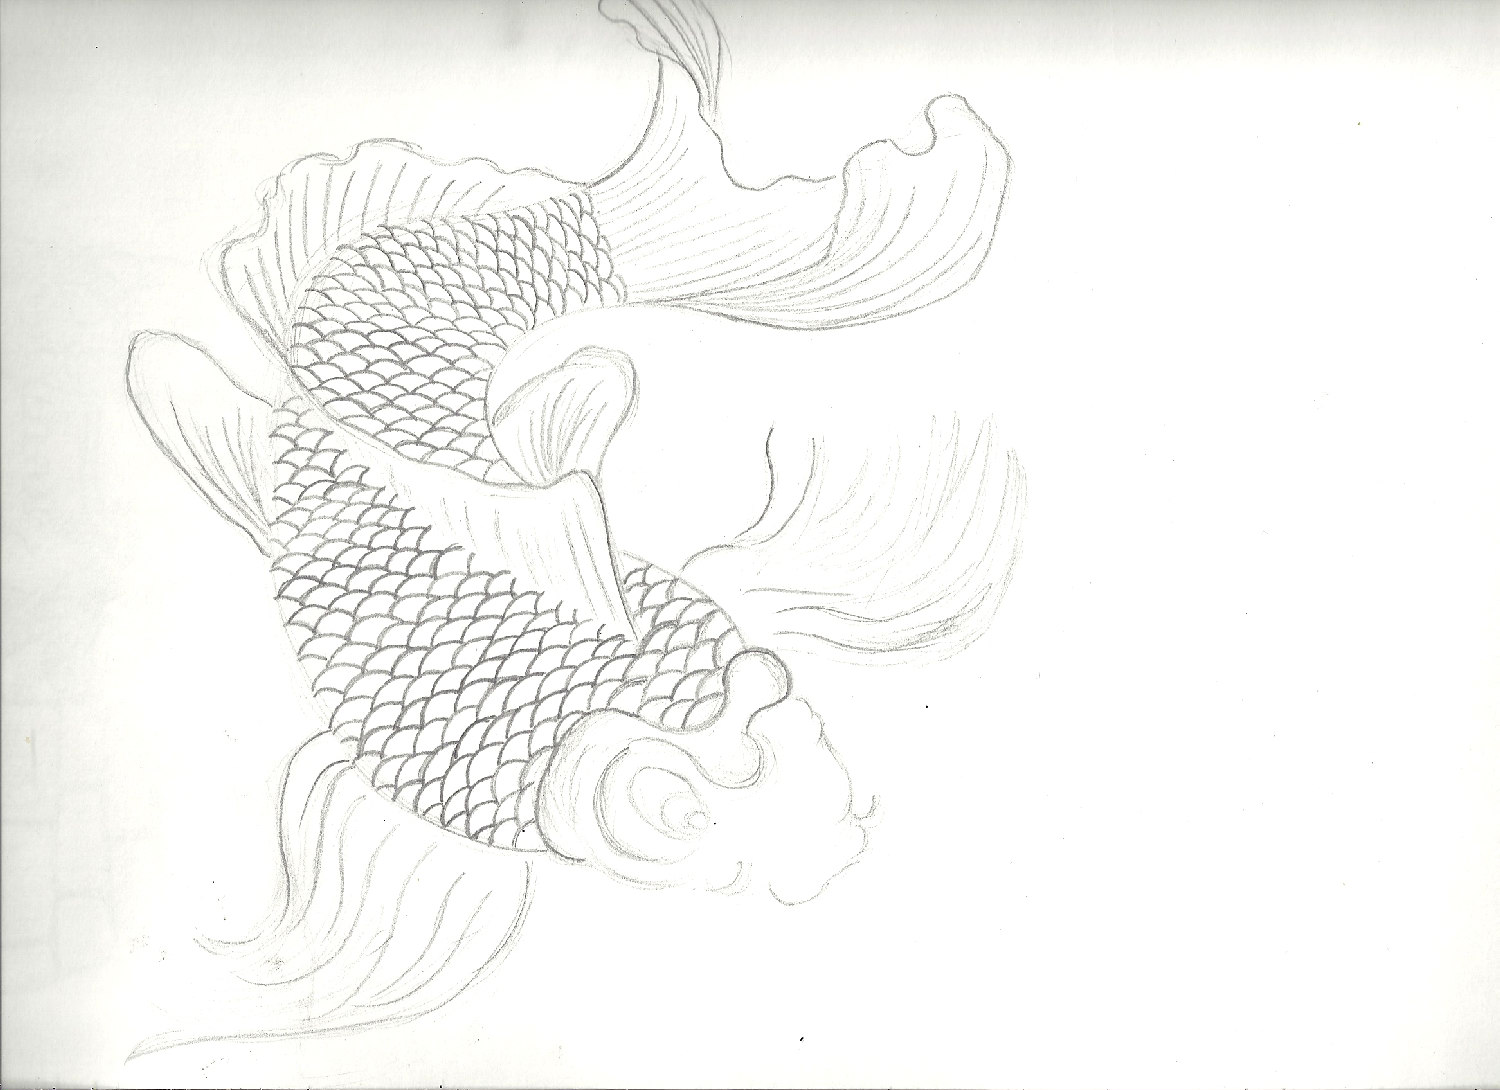 koi fish drawing by keirushii